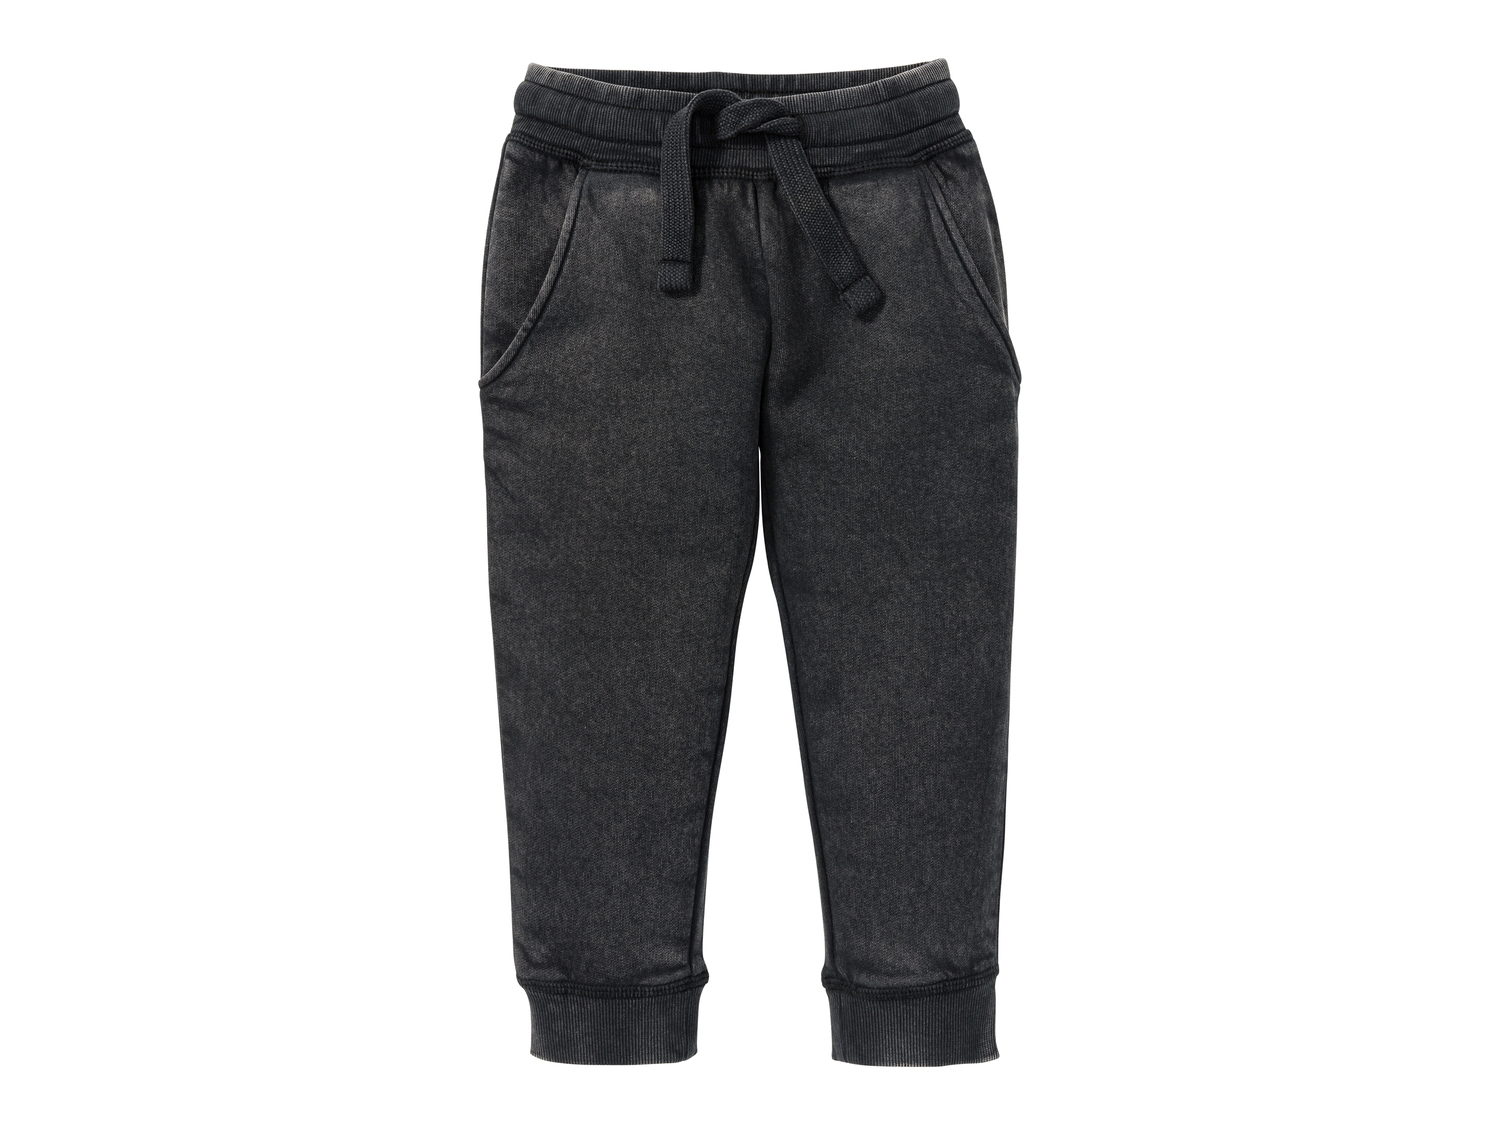 Pantaloni sportivi da bambino Lupilu, prezzo 4.99 &#8364; 

Taglie disponibili

Caratteristiche

- ...